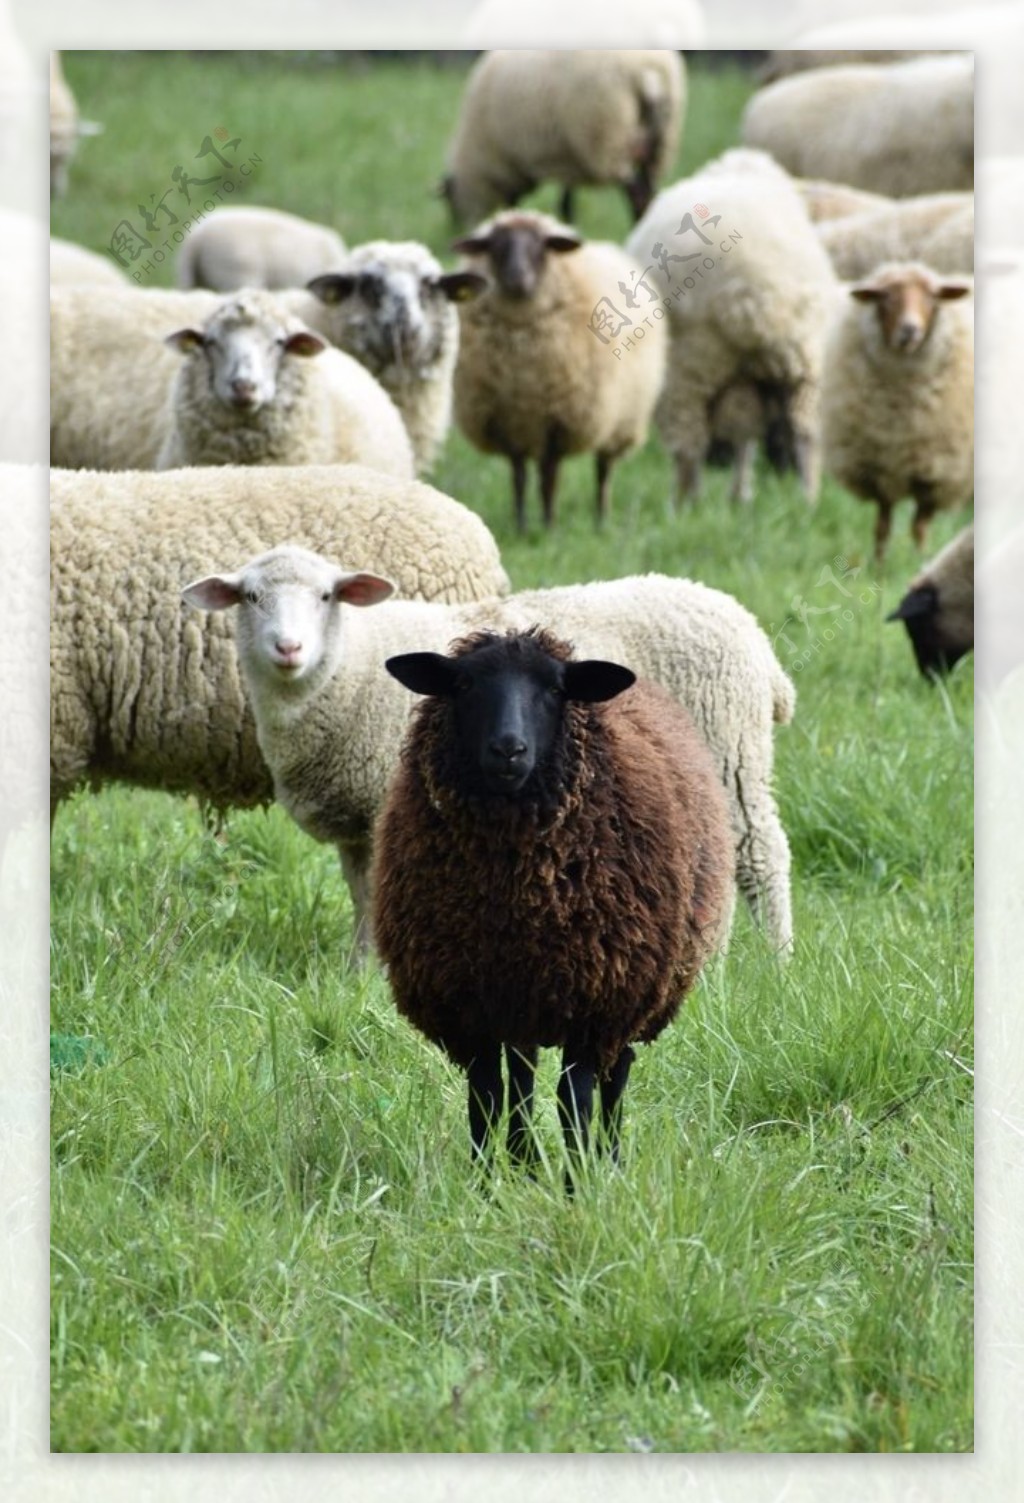 图片素材 : 放牧, 牧场, 哺乳动物, 农业, 羊毛, 动物群, 羊群, 脊椎动物, 牧群动物, 牛山羊家庭 3264x2448 ...